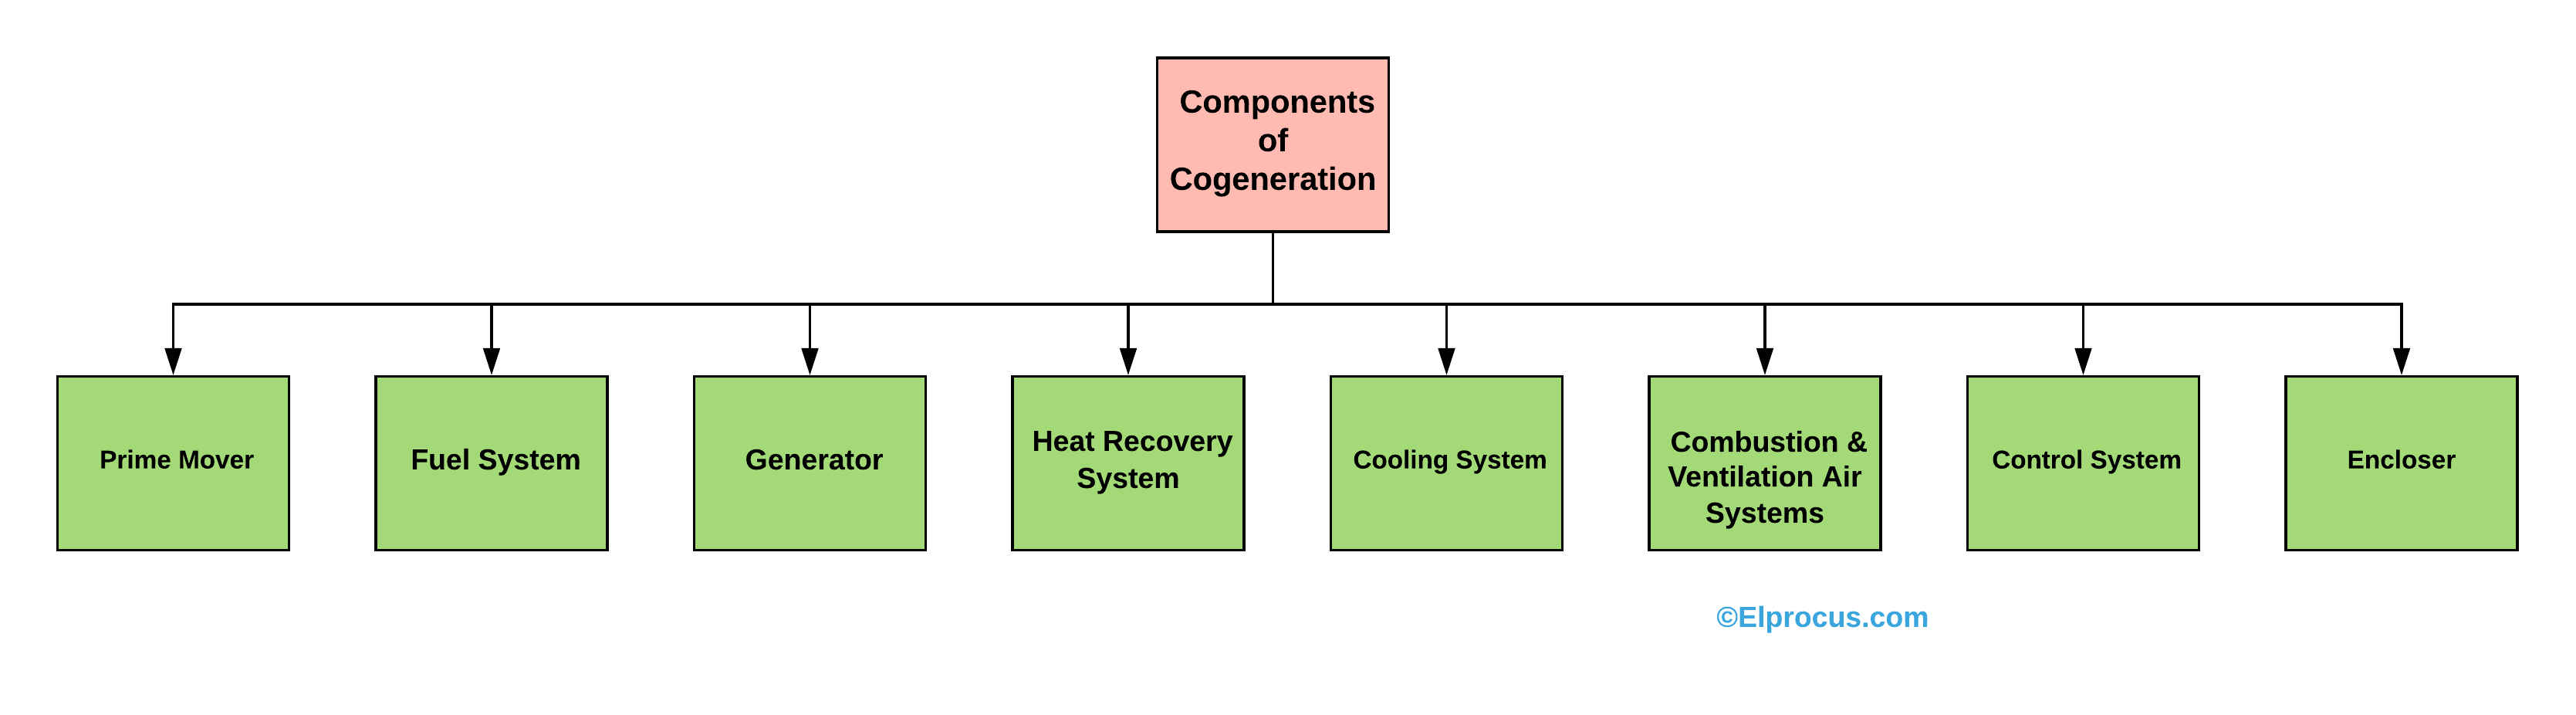 Componentes de la cogeneración